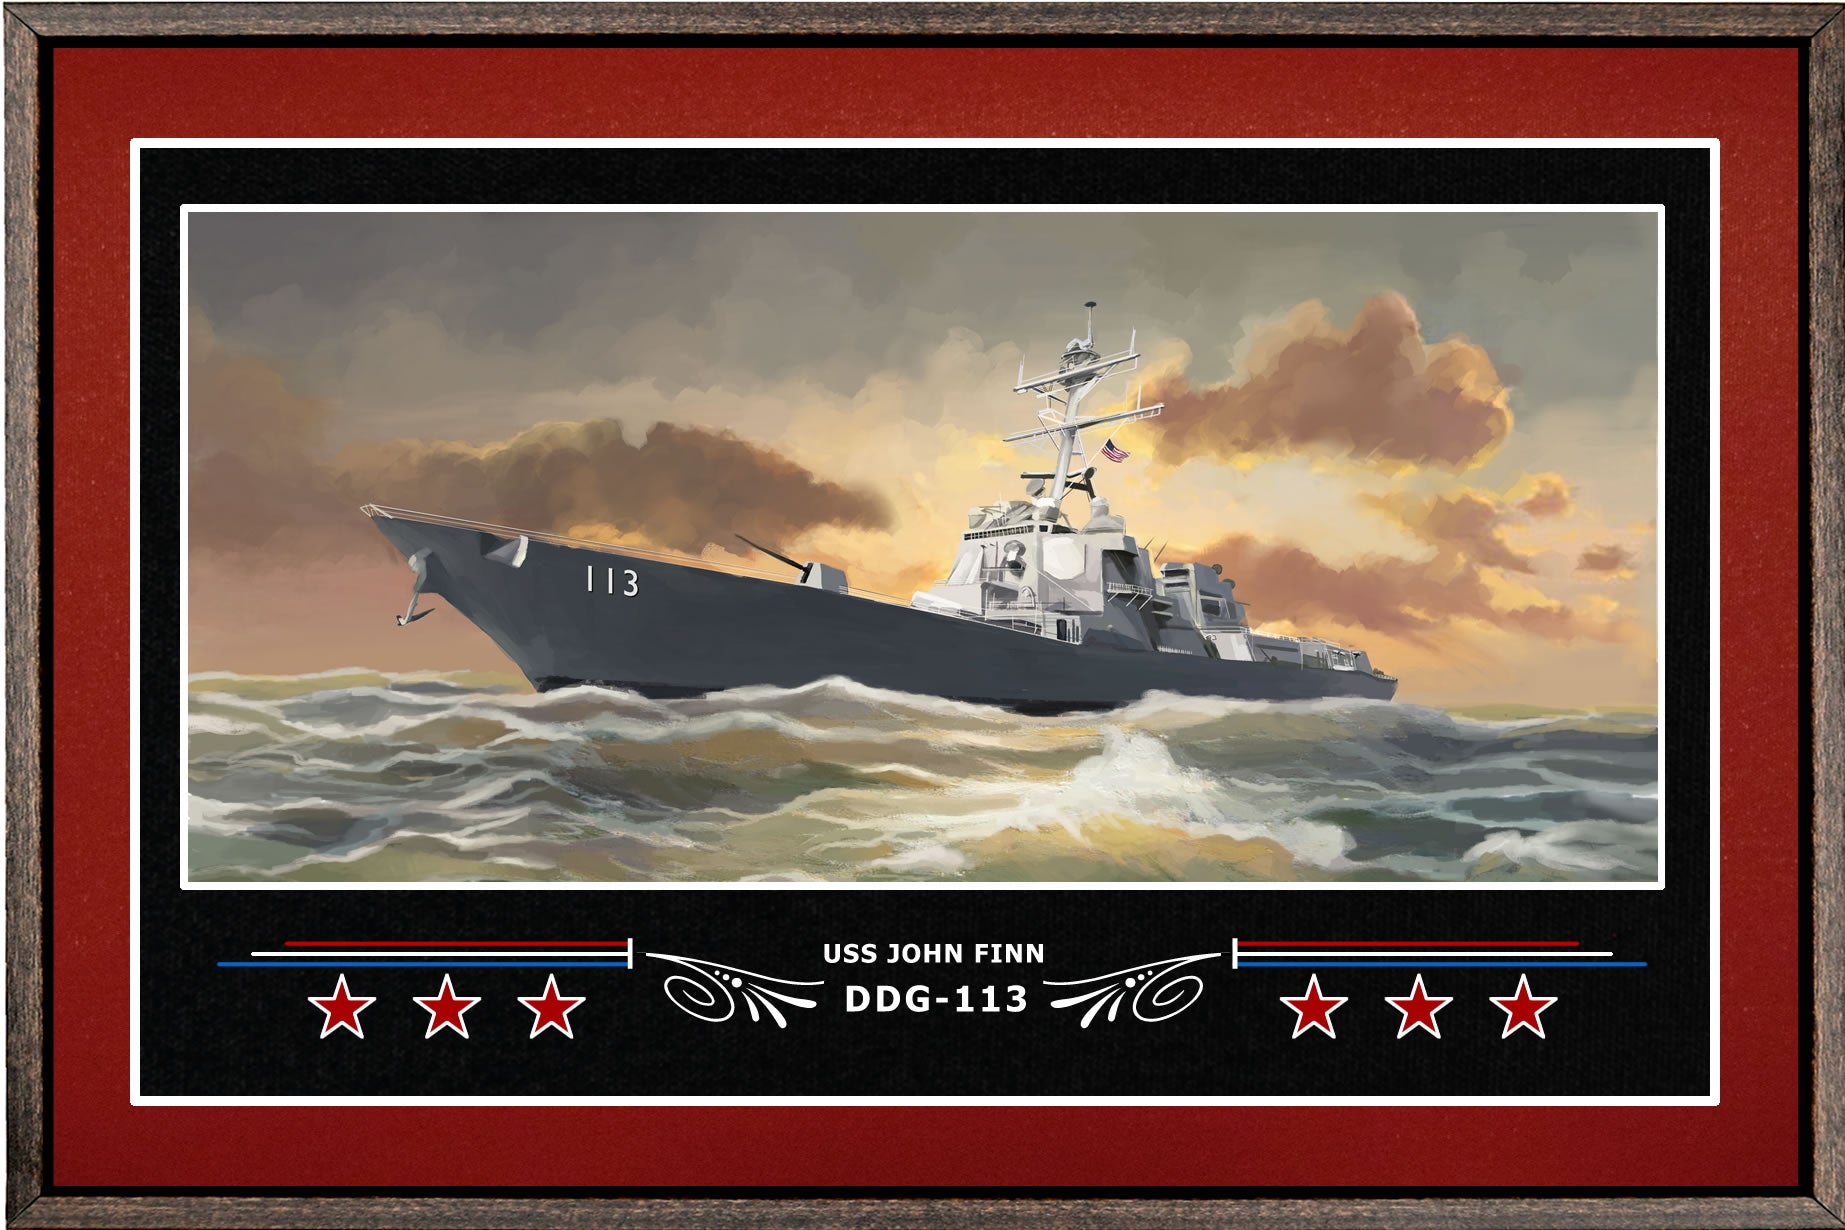 USS JOHN FINN DDG 113 BOX FRAMED CANVAS ART BURGUNDY